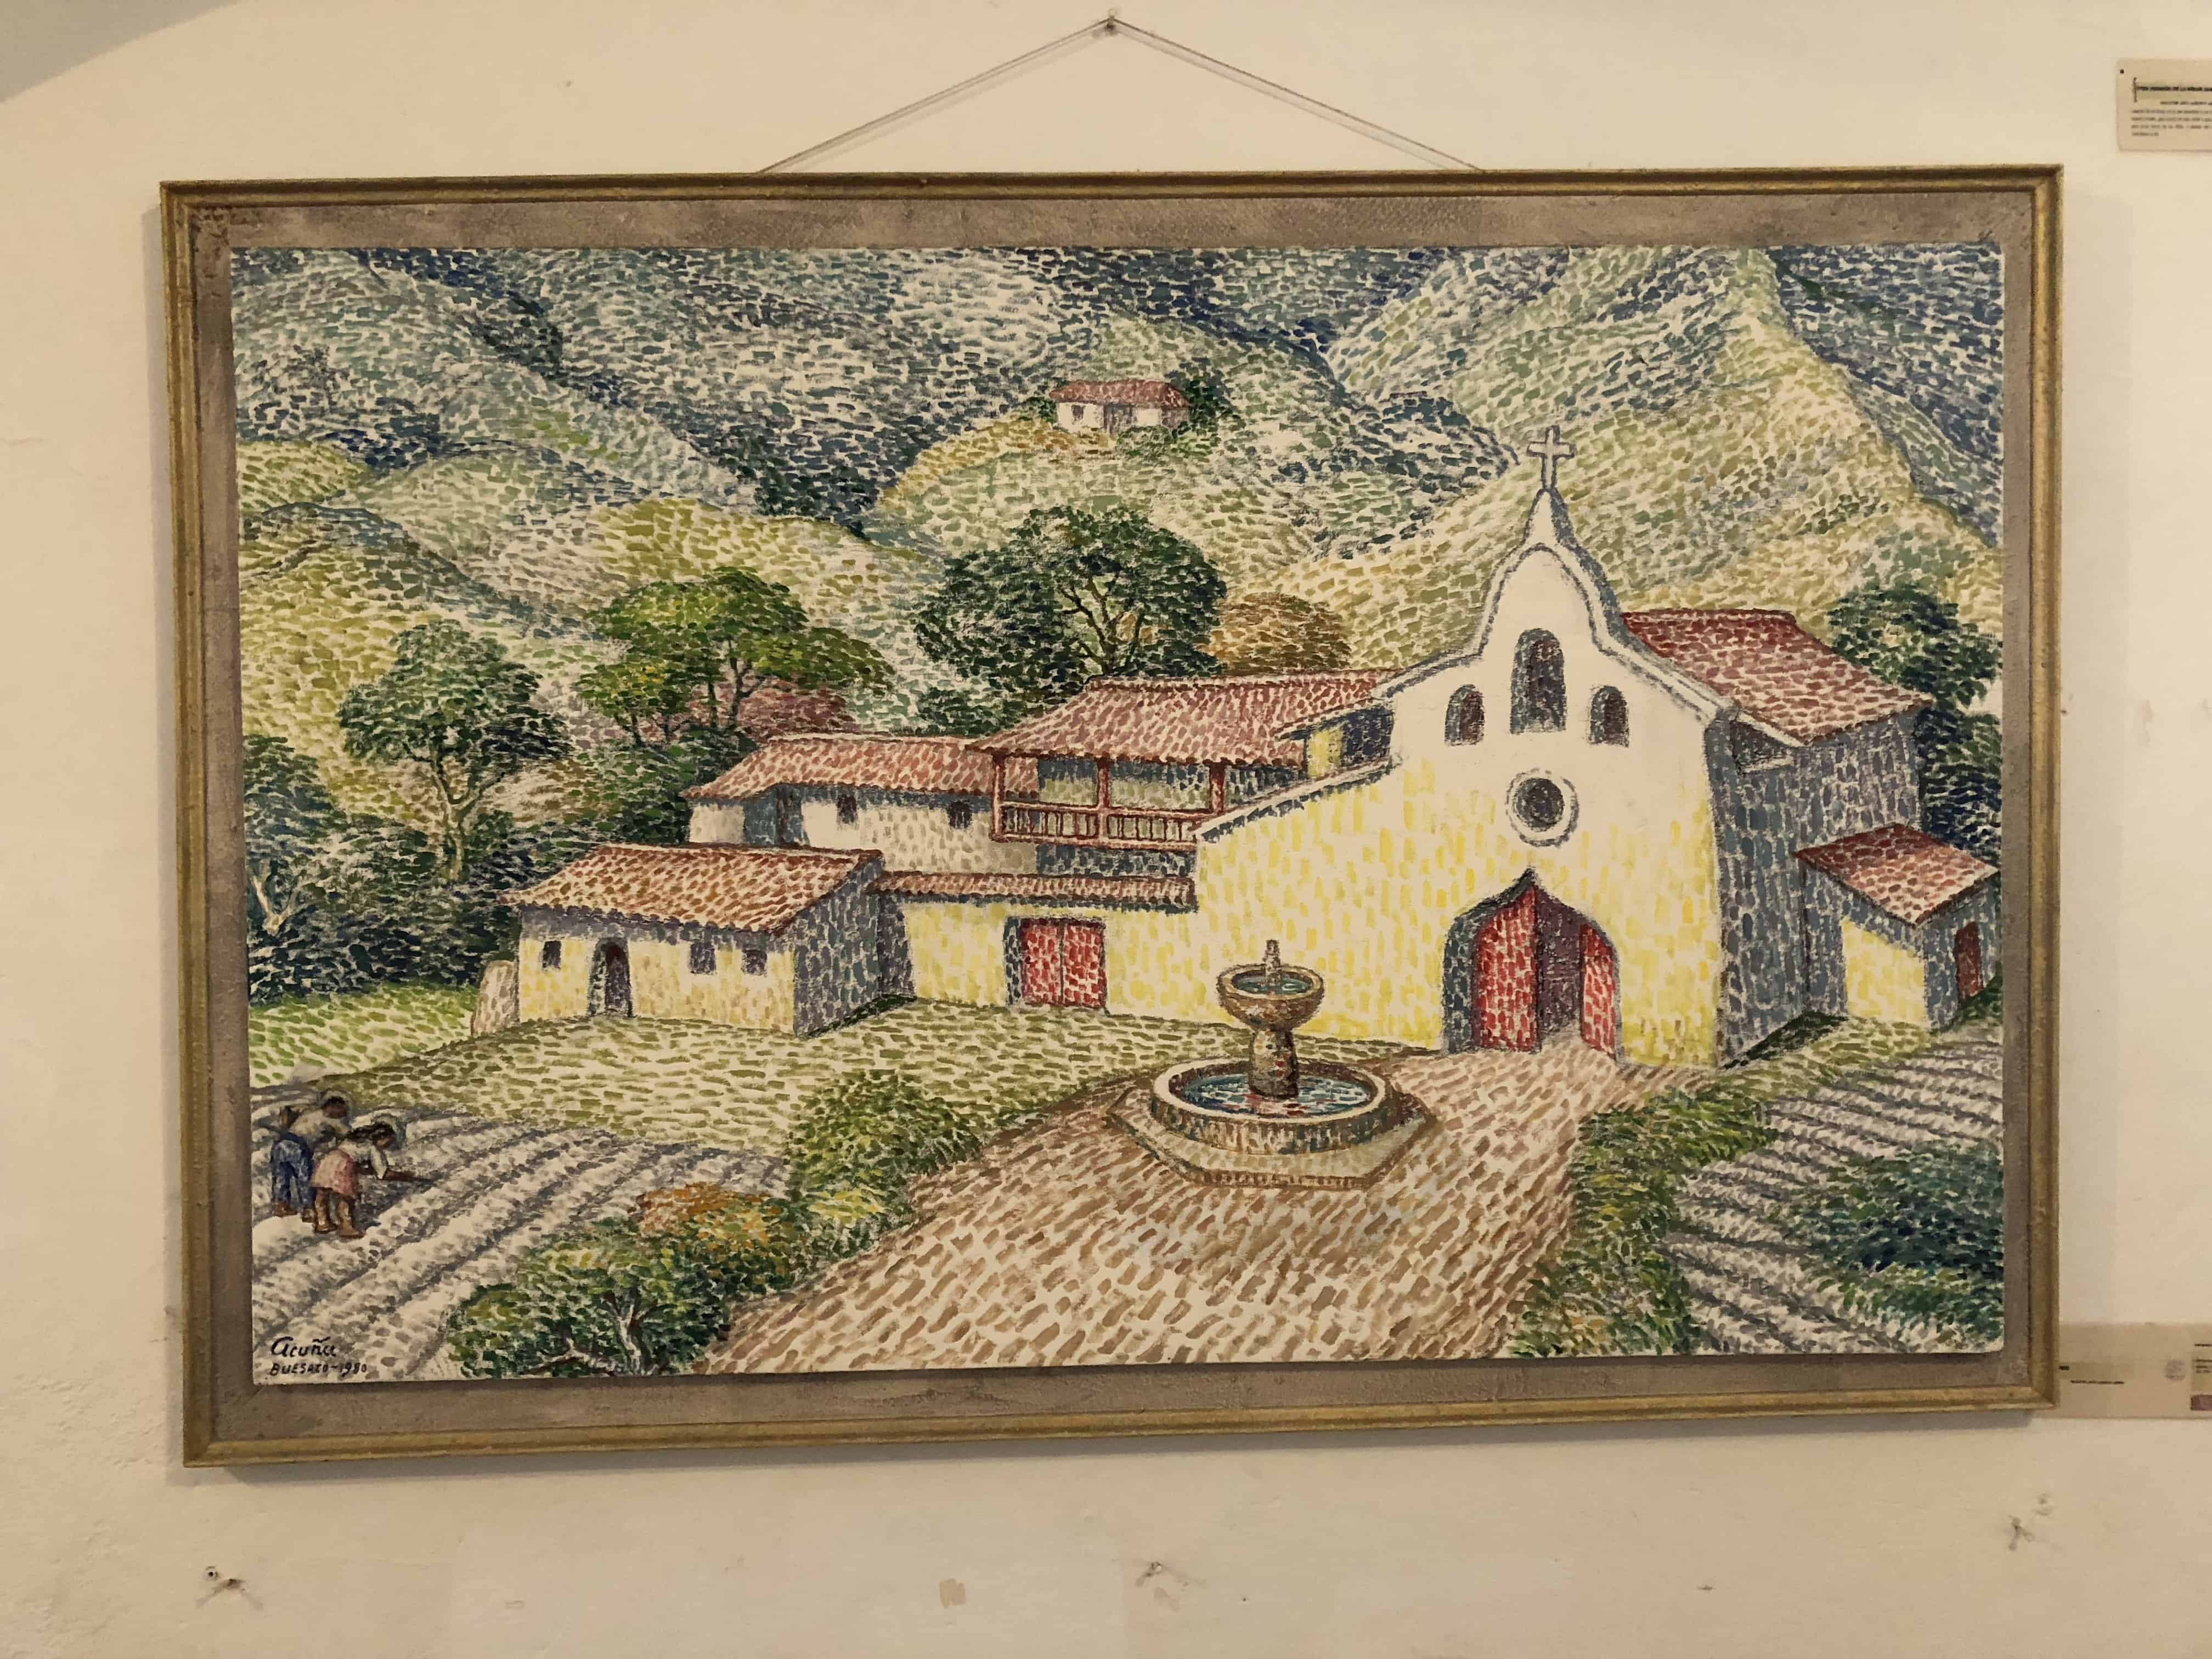 A painting in the main gallery at Casa Museo Luis Alberto Acuña in Villa de Leyva, Boyacá, Colombia